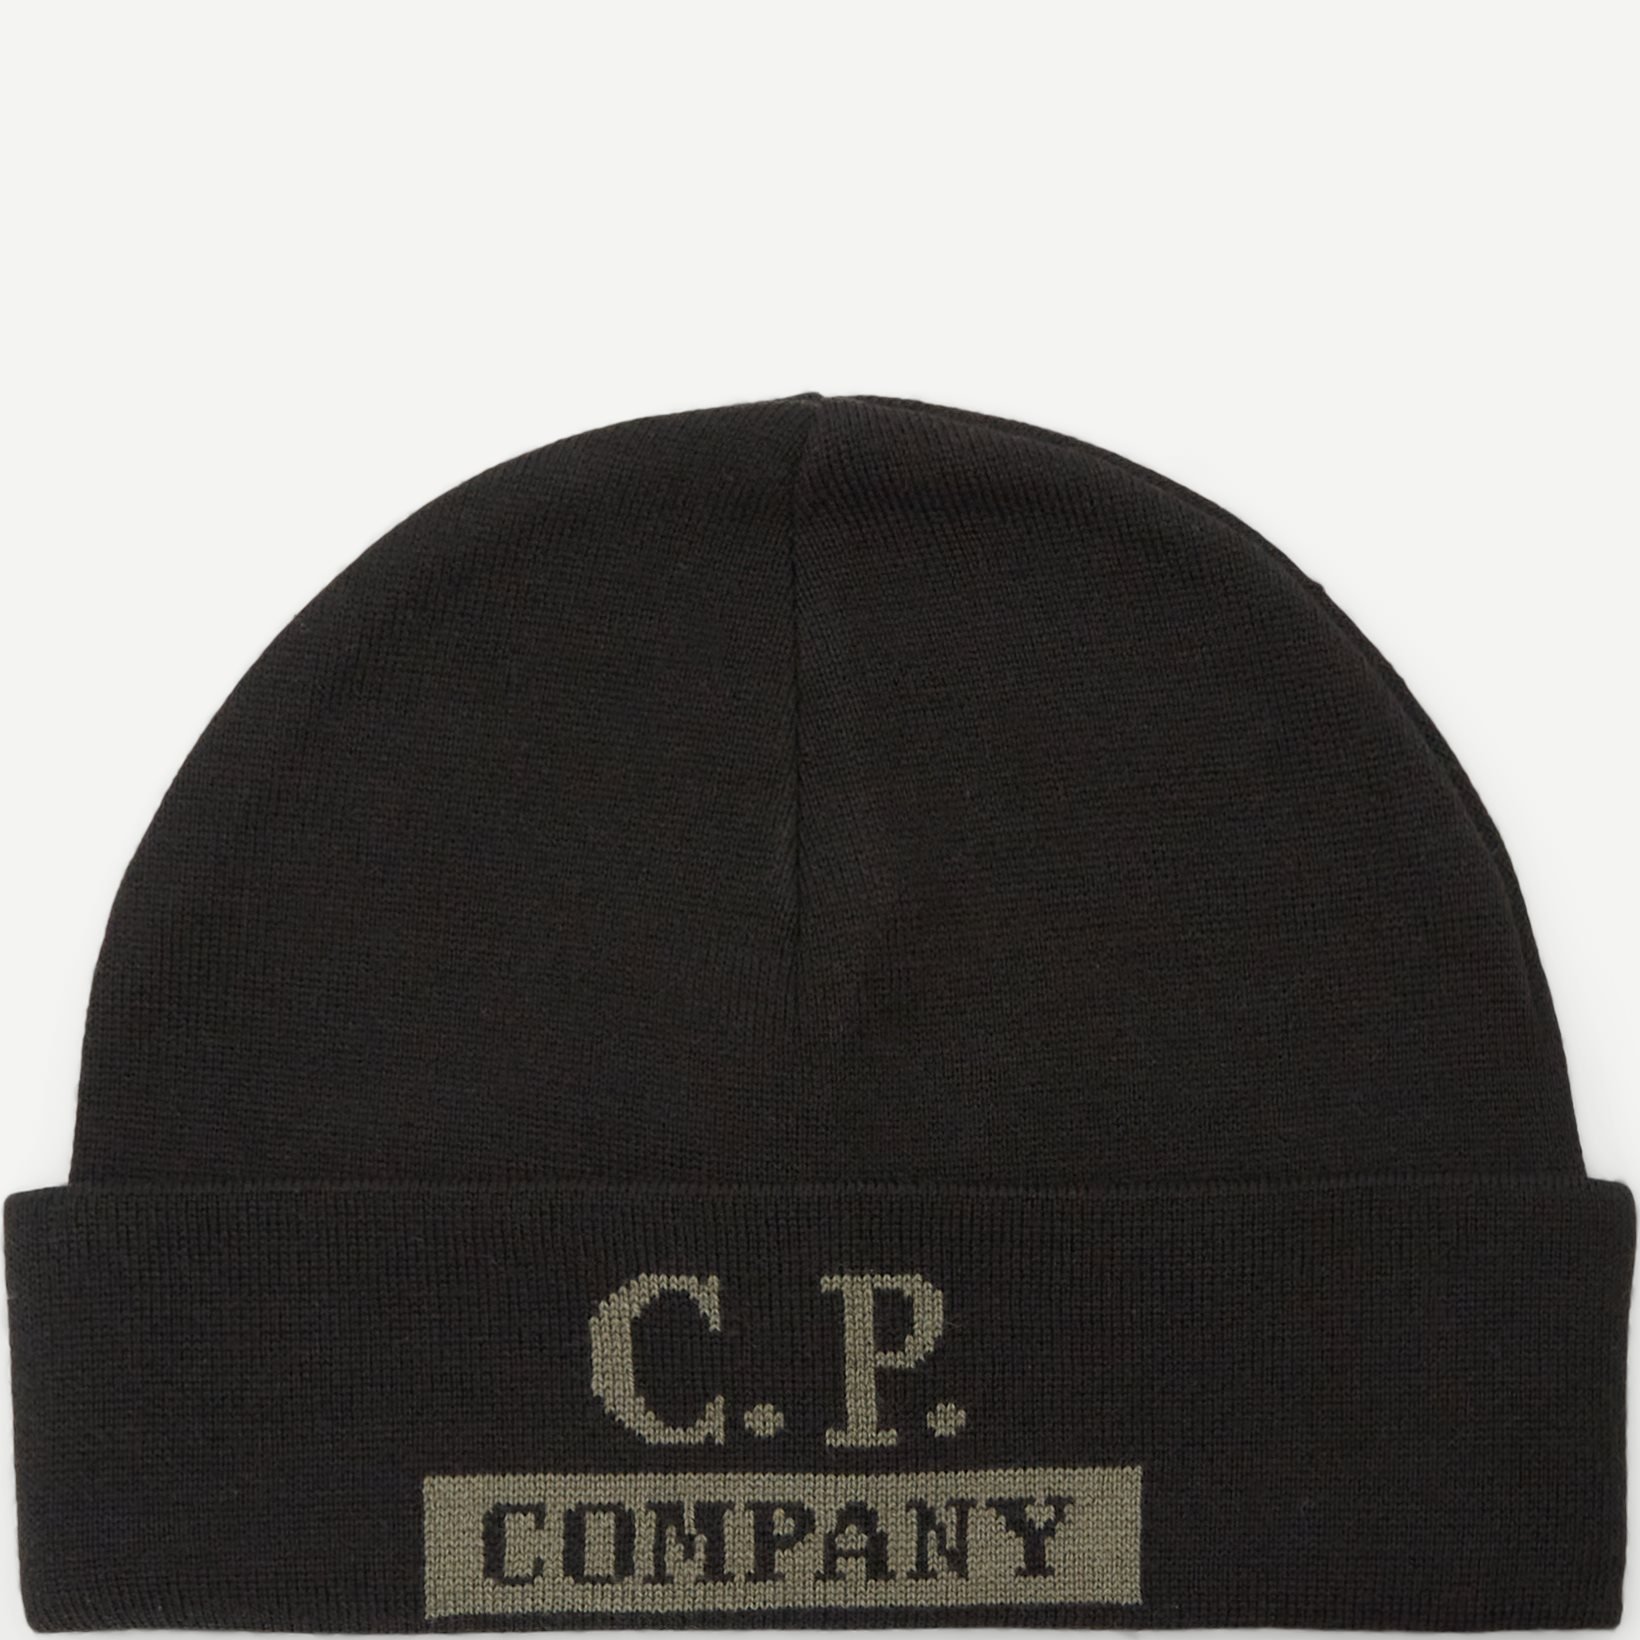 Caps - Black